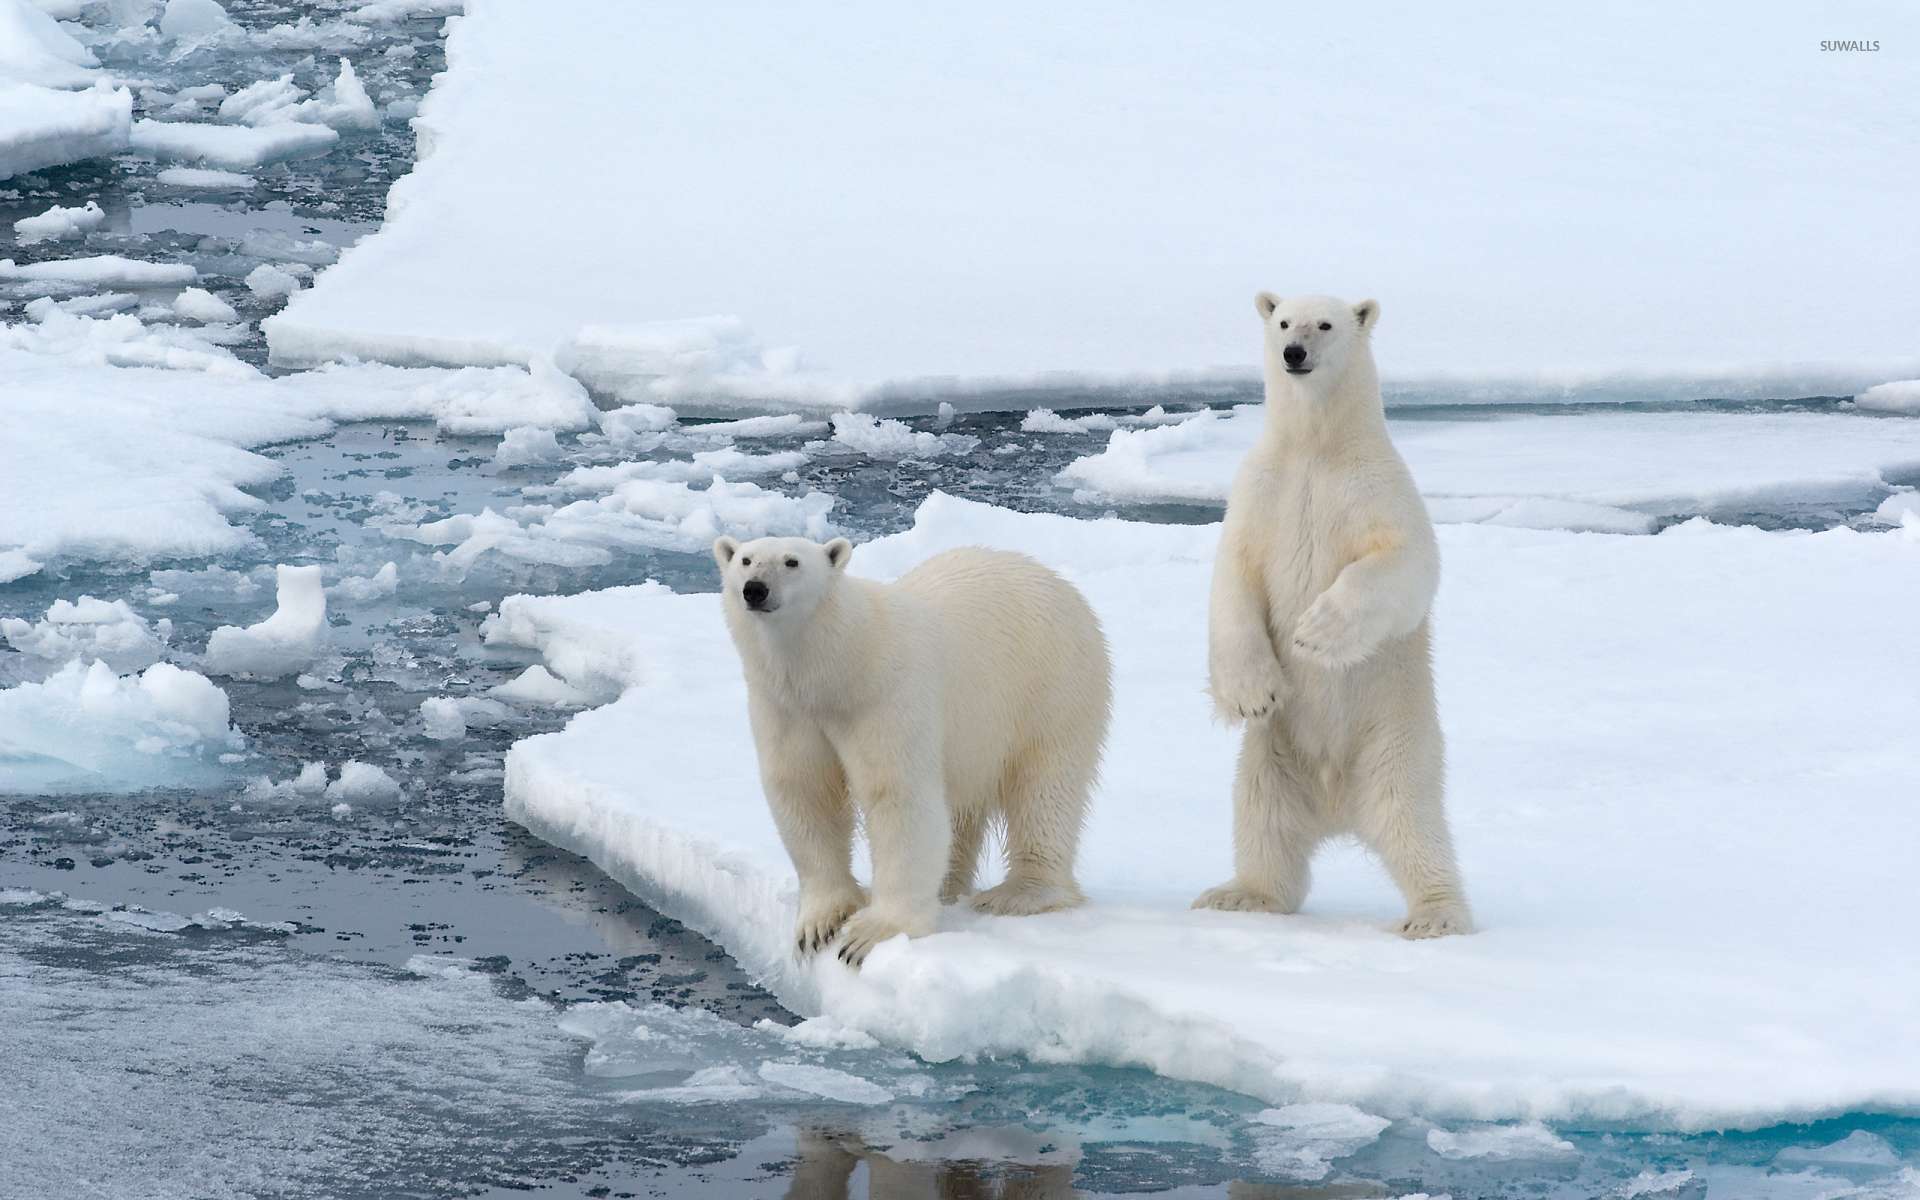 Cute Polar bears by the frozen water wallpaper wallpaper